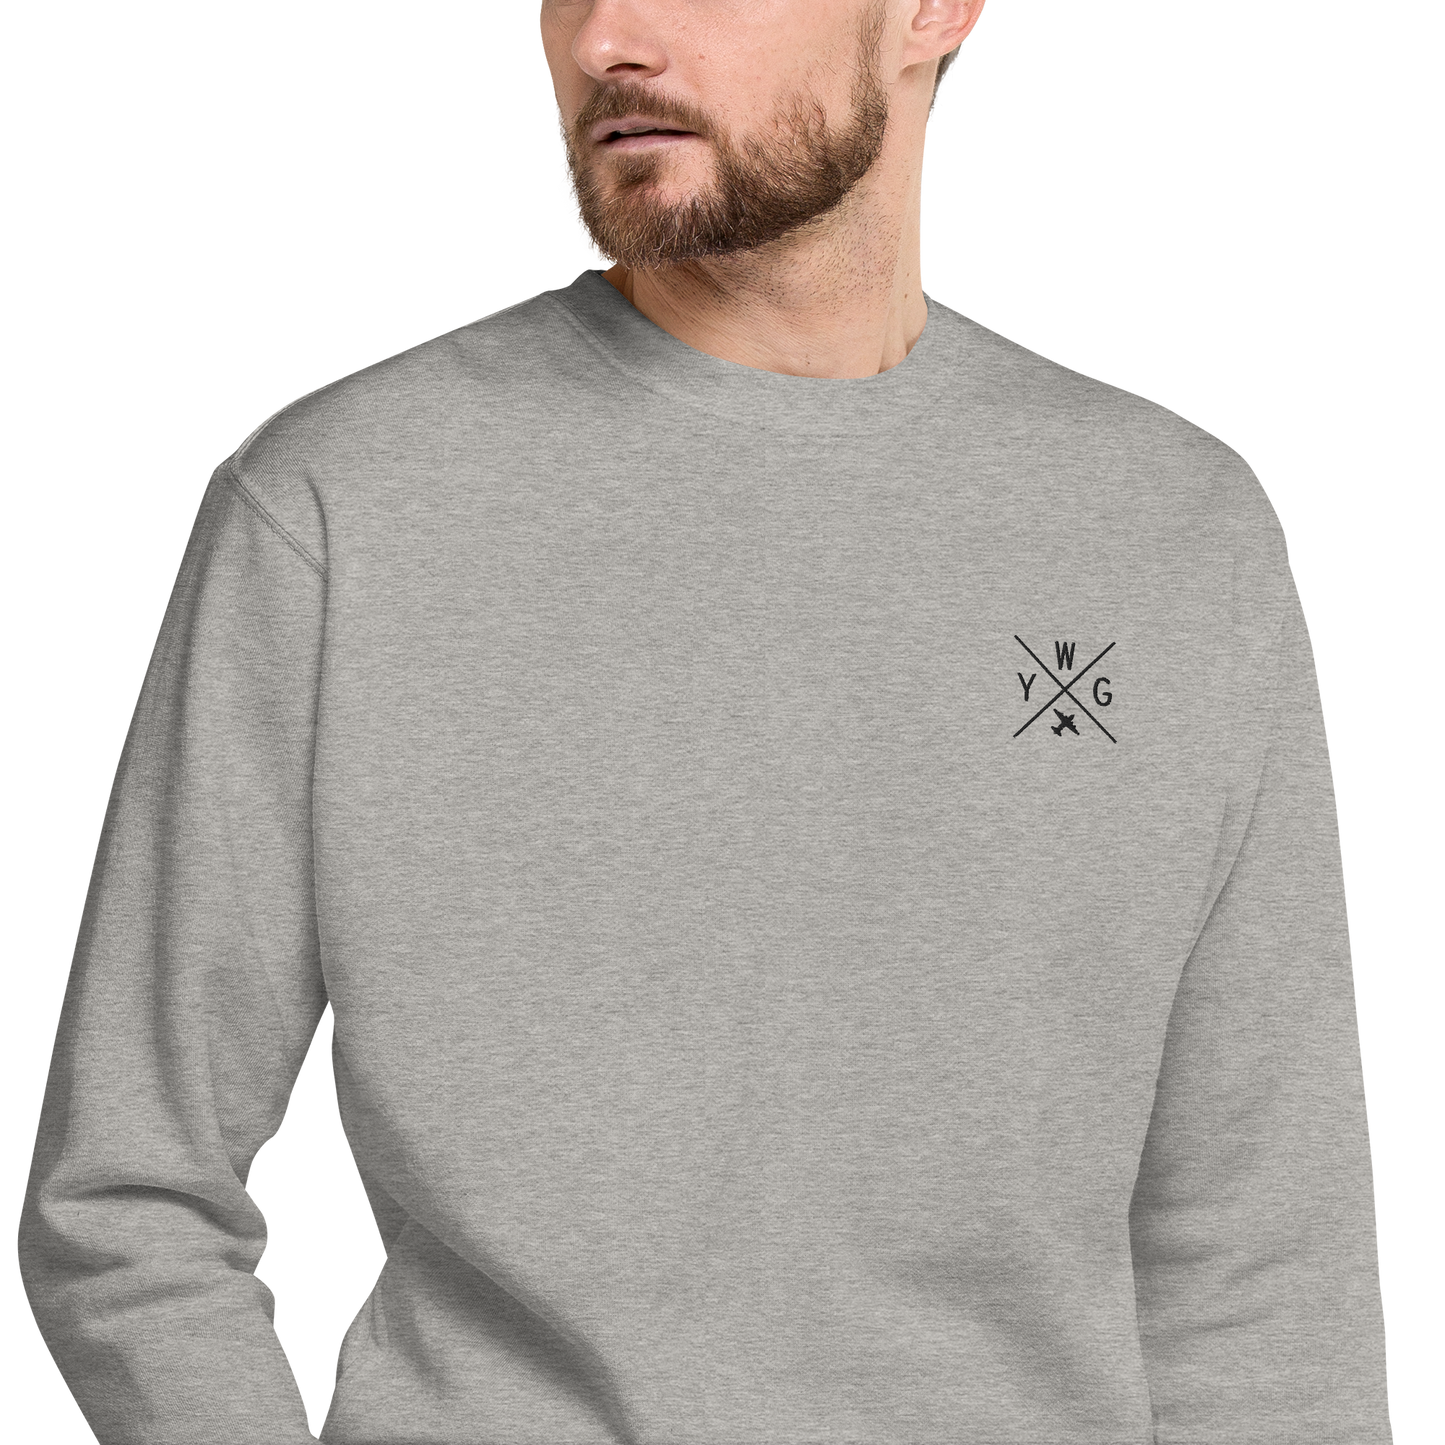 Crossed-X Premium Sweatshirt • YWG Winnipeg • YHM Designs - Image 09